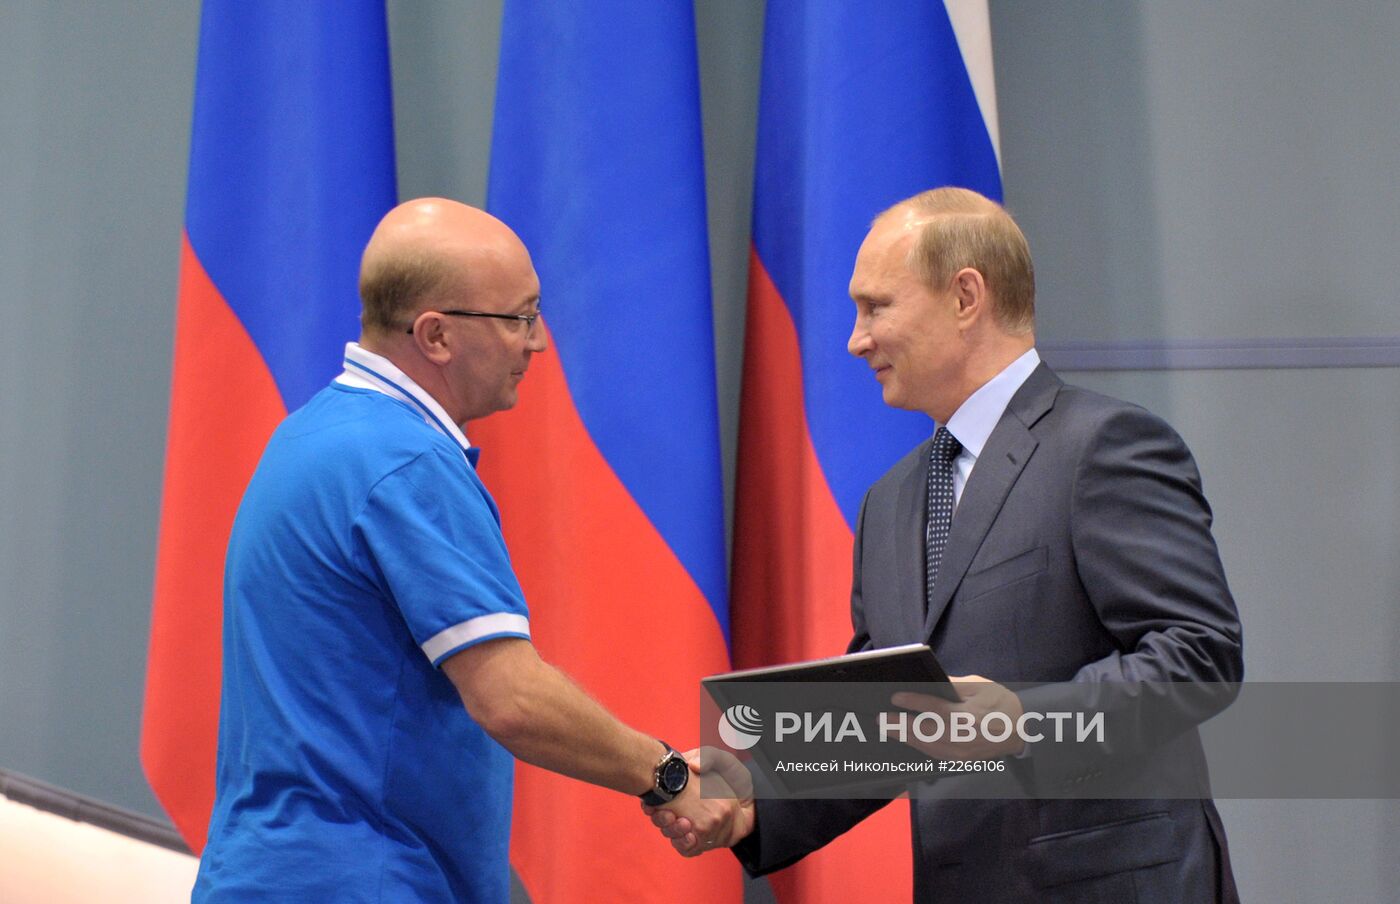 В.Путин встретился с членами хоккейного клуба "Динамо"